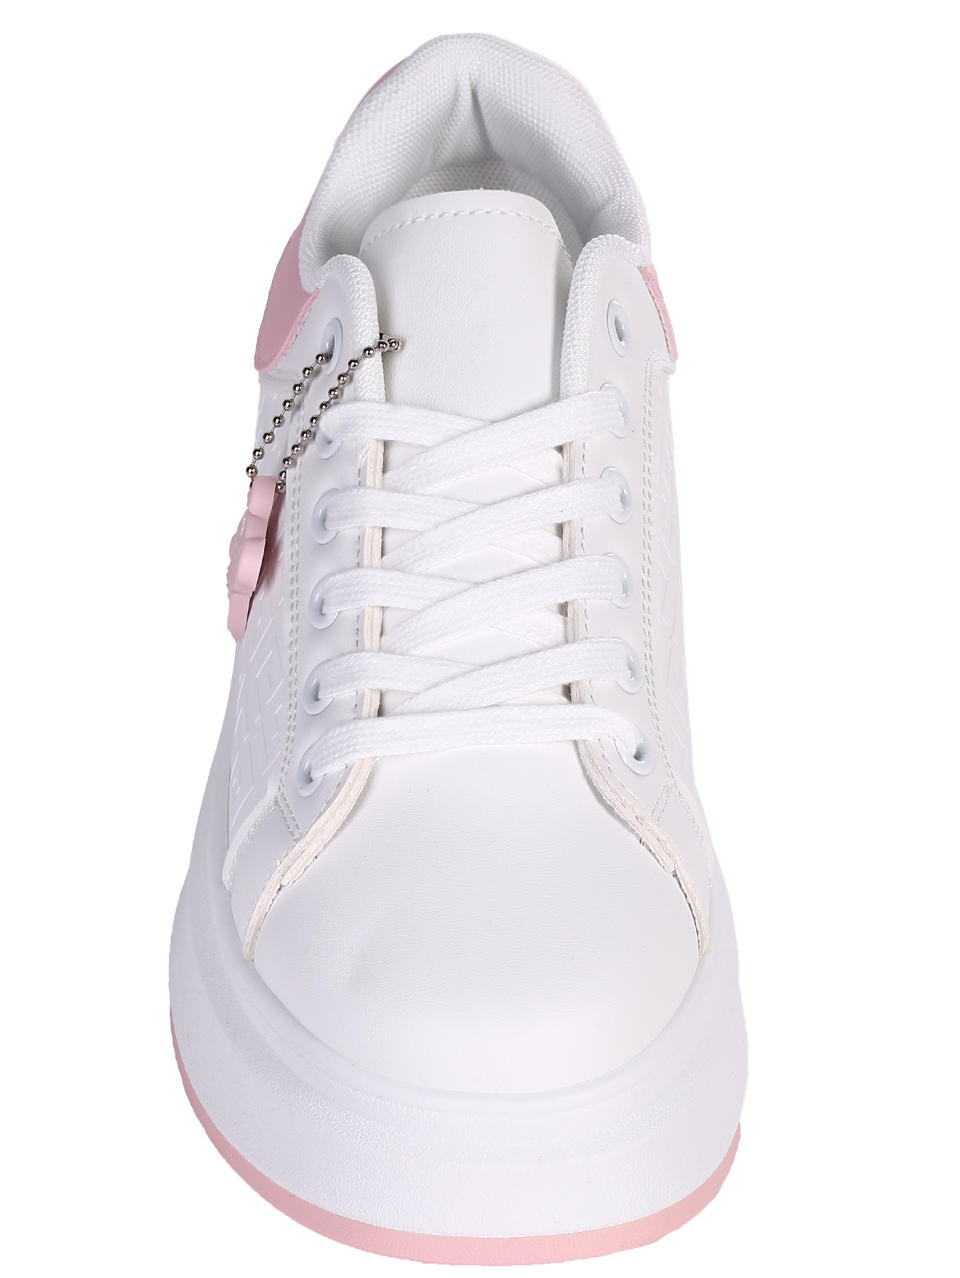 Ежедневни дамски обувки на платформа в бял/розов цвят 3U-24071 white/pink